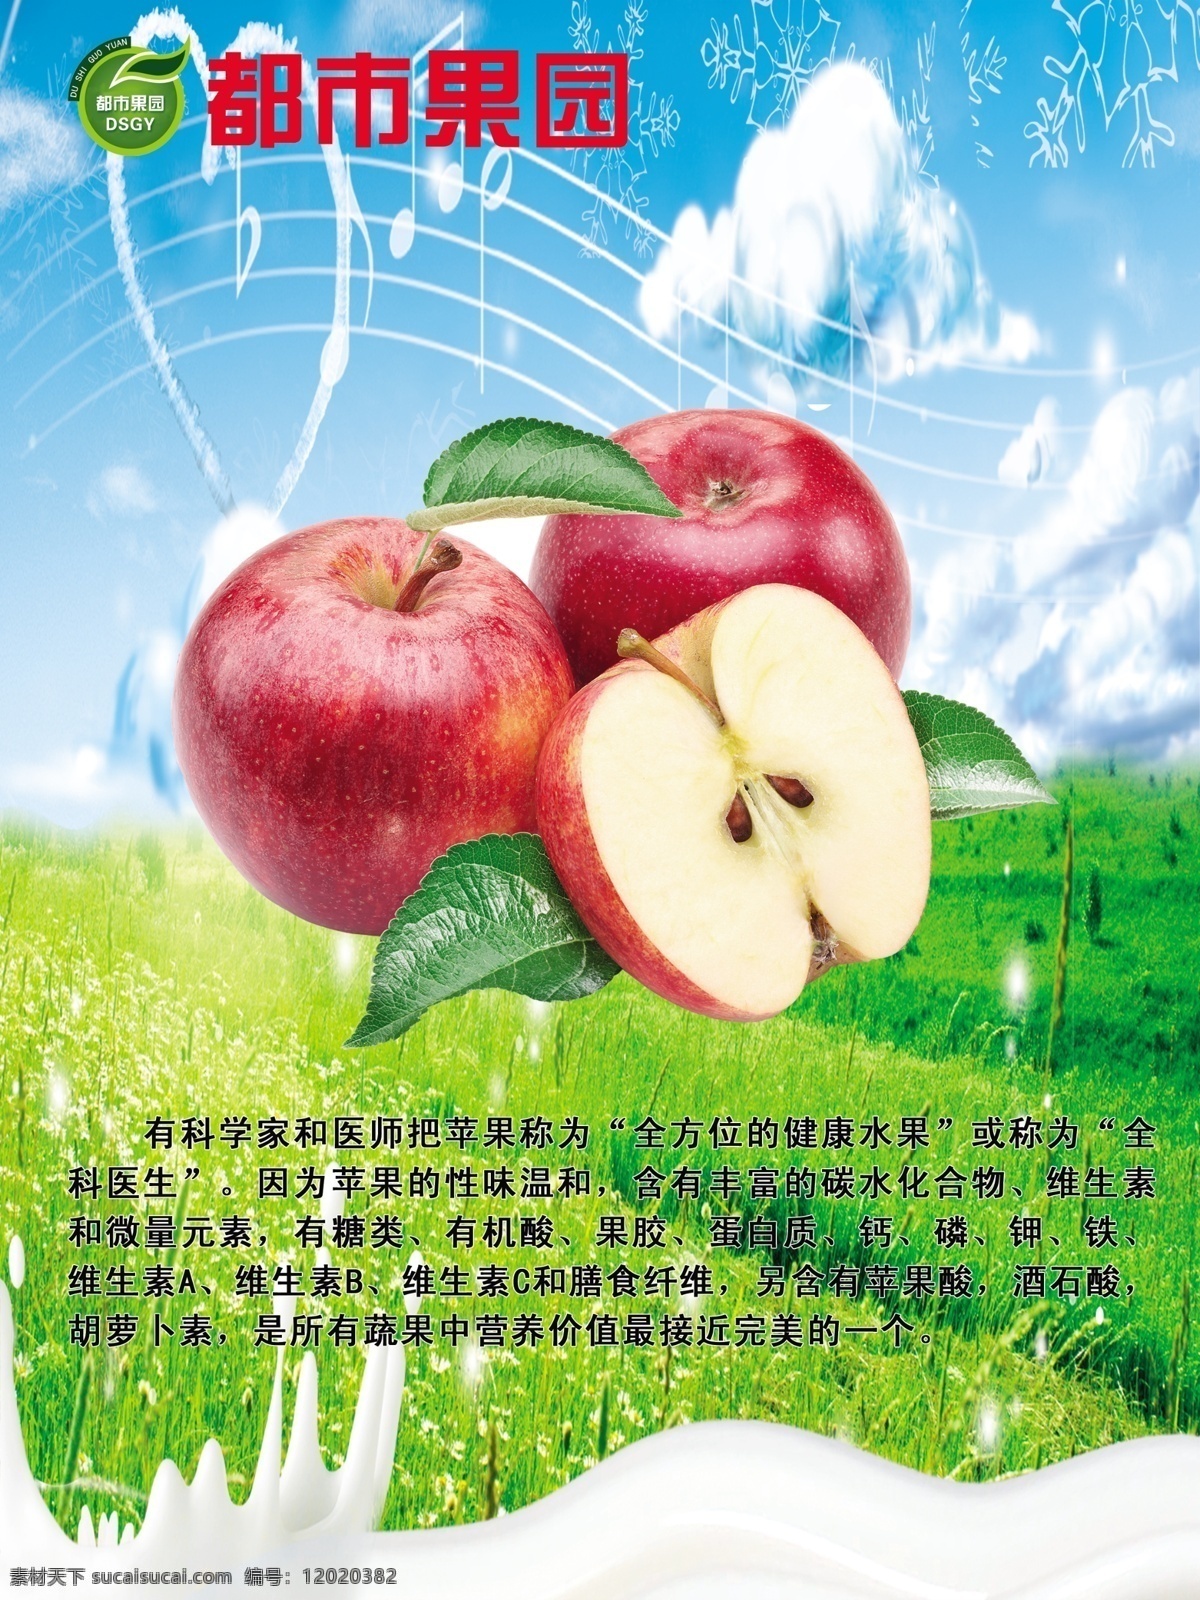 苹果 墙纸海报 水果海报 水果简介 绿色